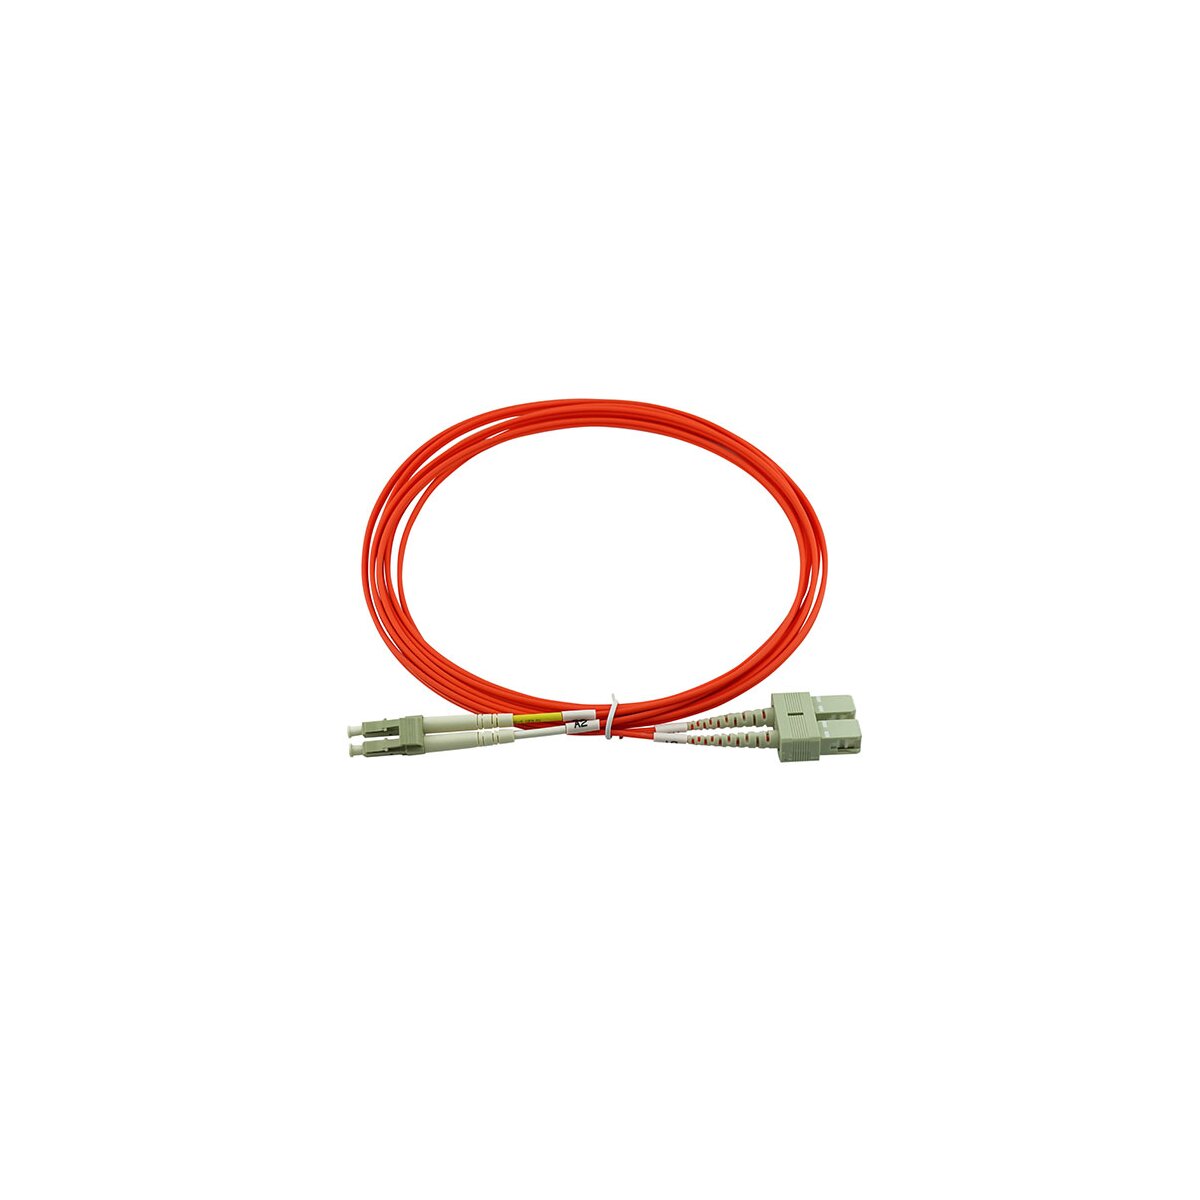 Kabel & Adapter kaufen Sie günstig im IT Online Shop OCTO24